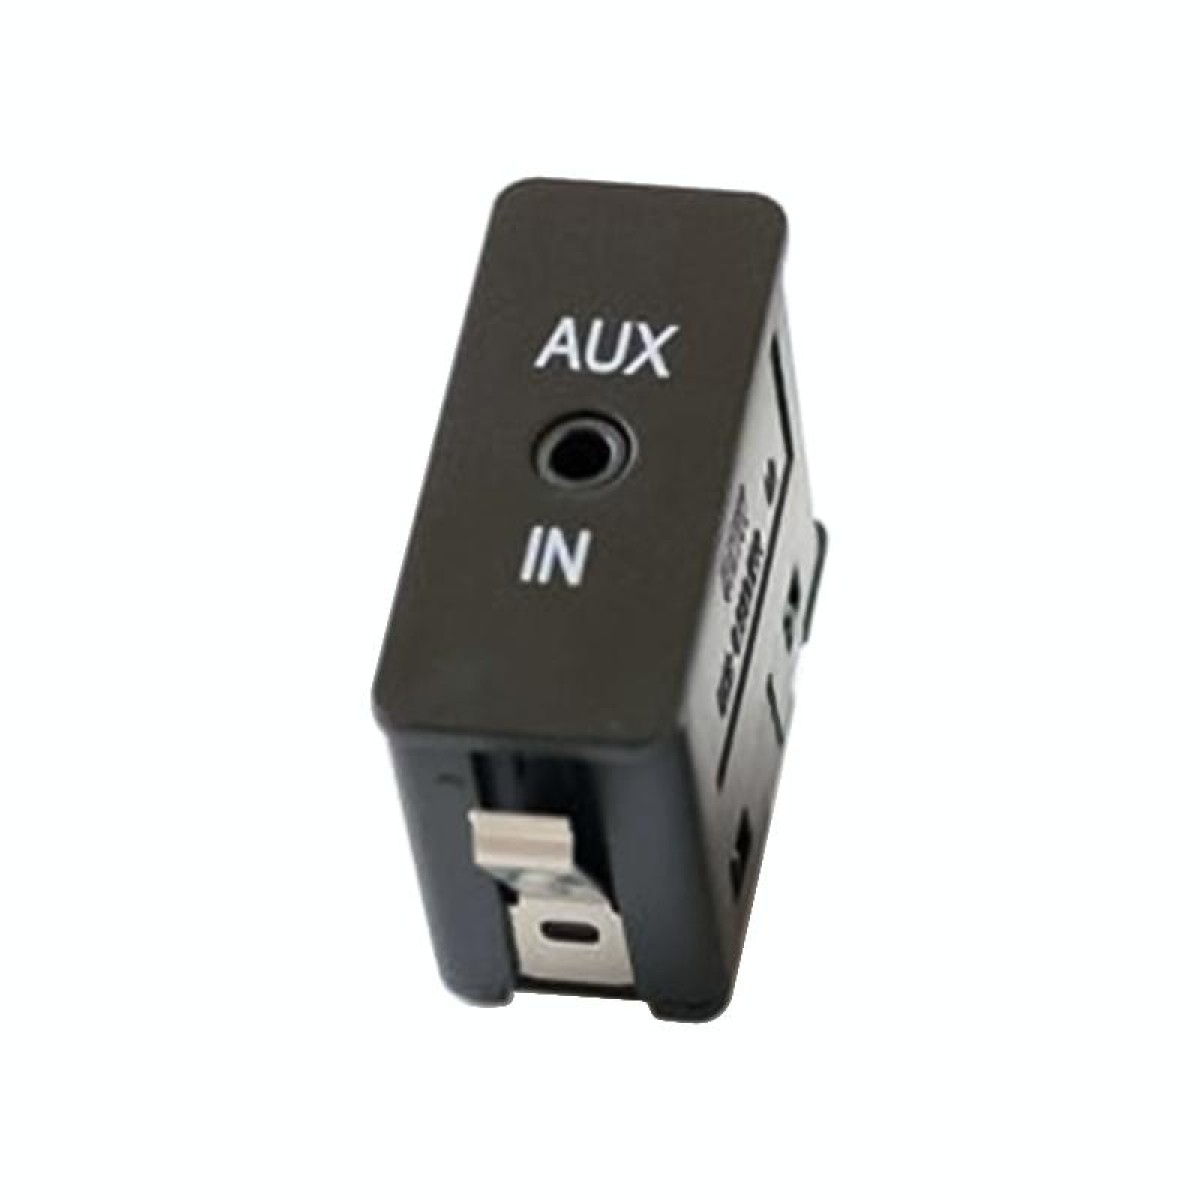 Car AUX Audio Cable Wire Harness for BMW E88 E70 E90